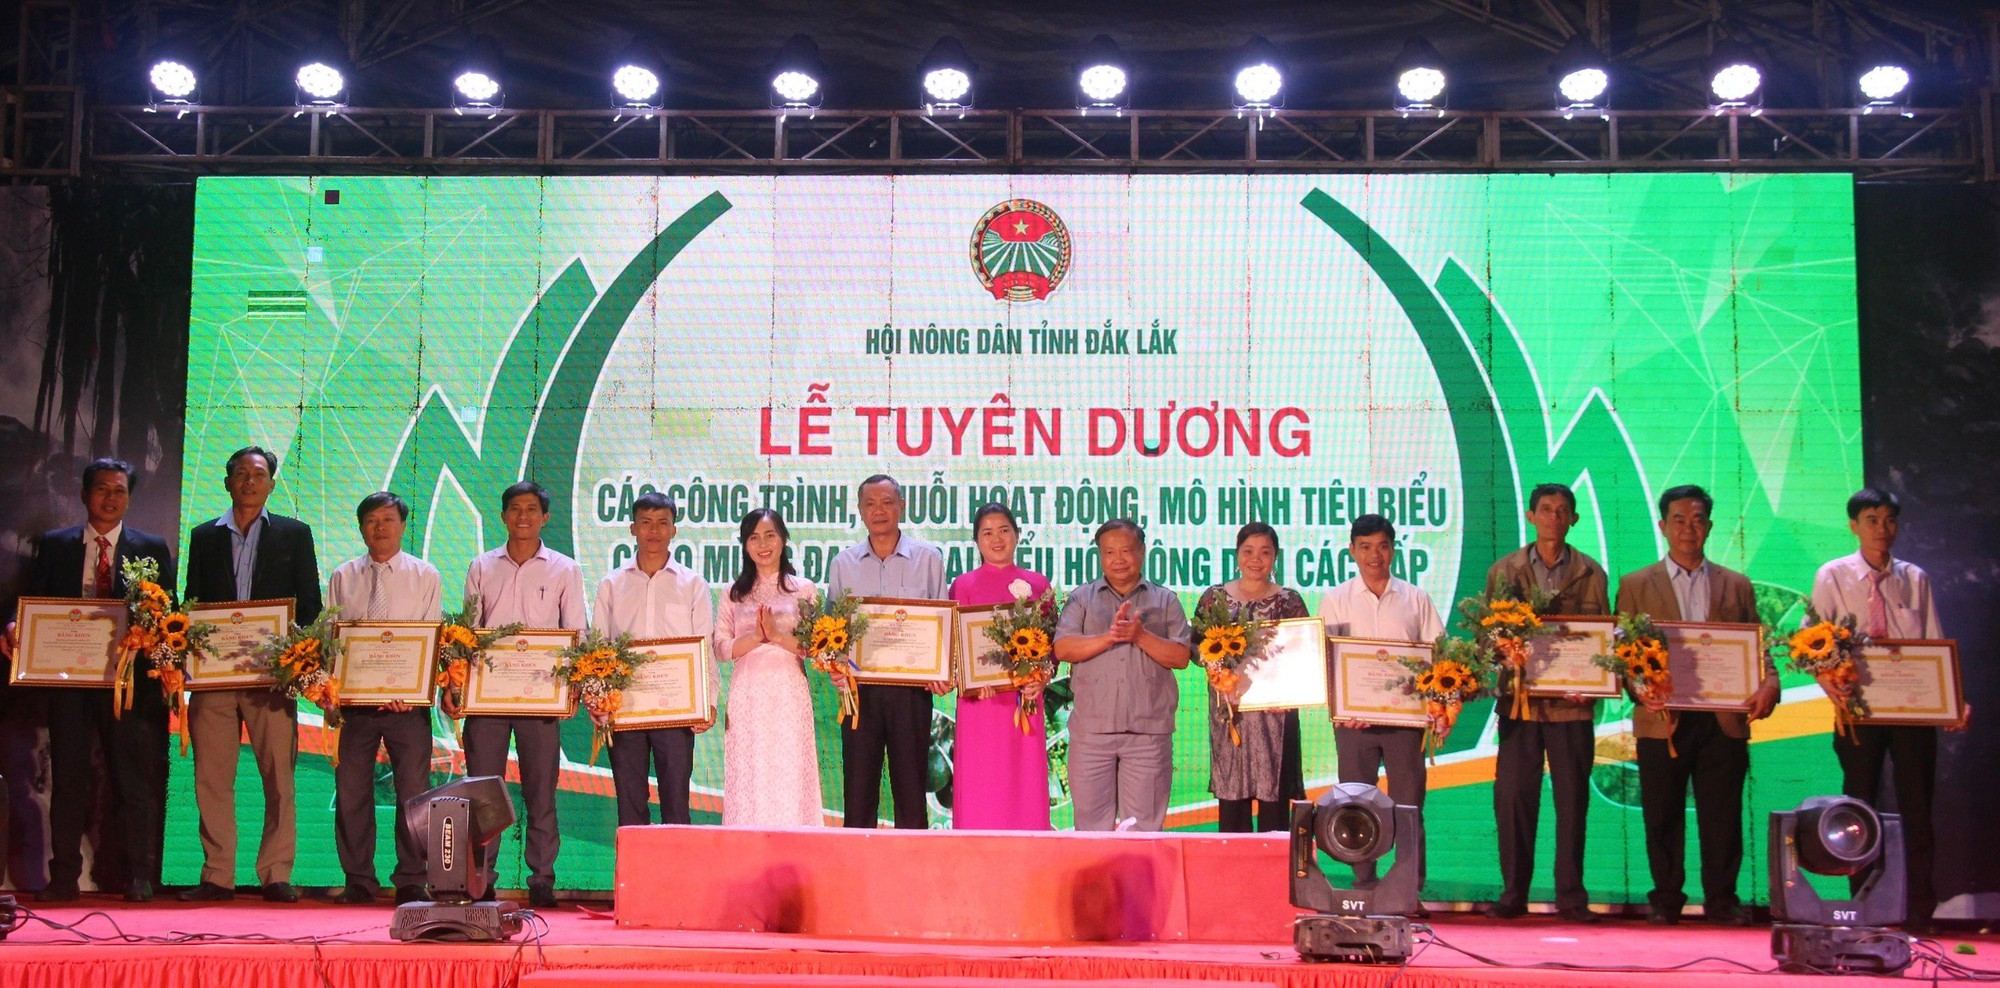 Nông dân Đắk Lắk tổ chức chuỗi sự kiện sôi nổi Kỷ niệm 120 năm Ngày thành lập tỉnh - Ảnh 4.